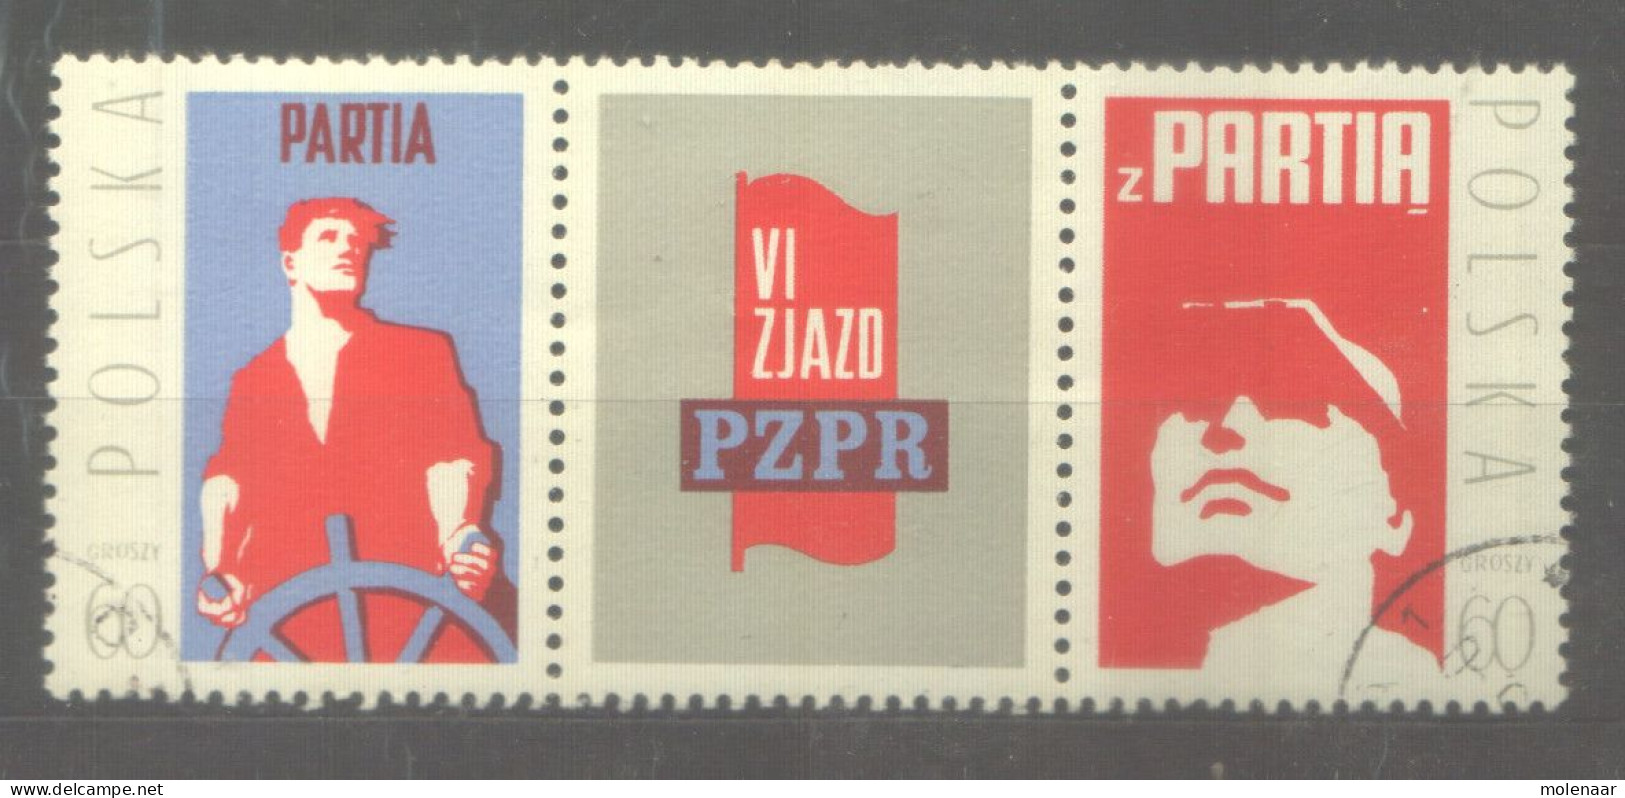 Postzegels > Europa > Polen > 1944-.... Republiek > 1971-80 > Gebruikt  2126-2127 (12062) - Oblitérés